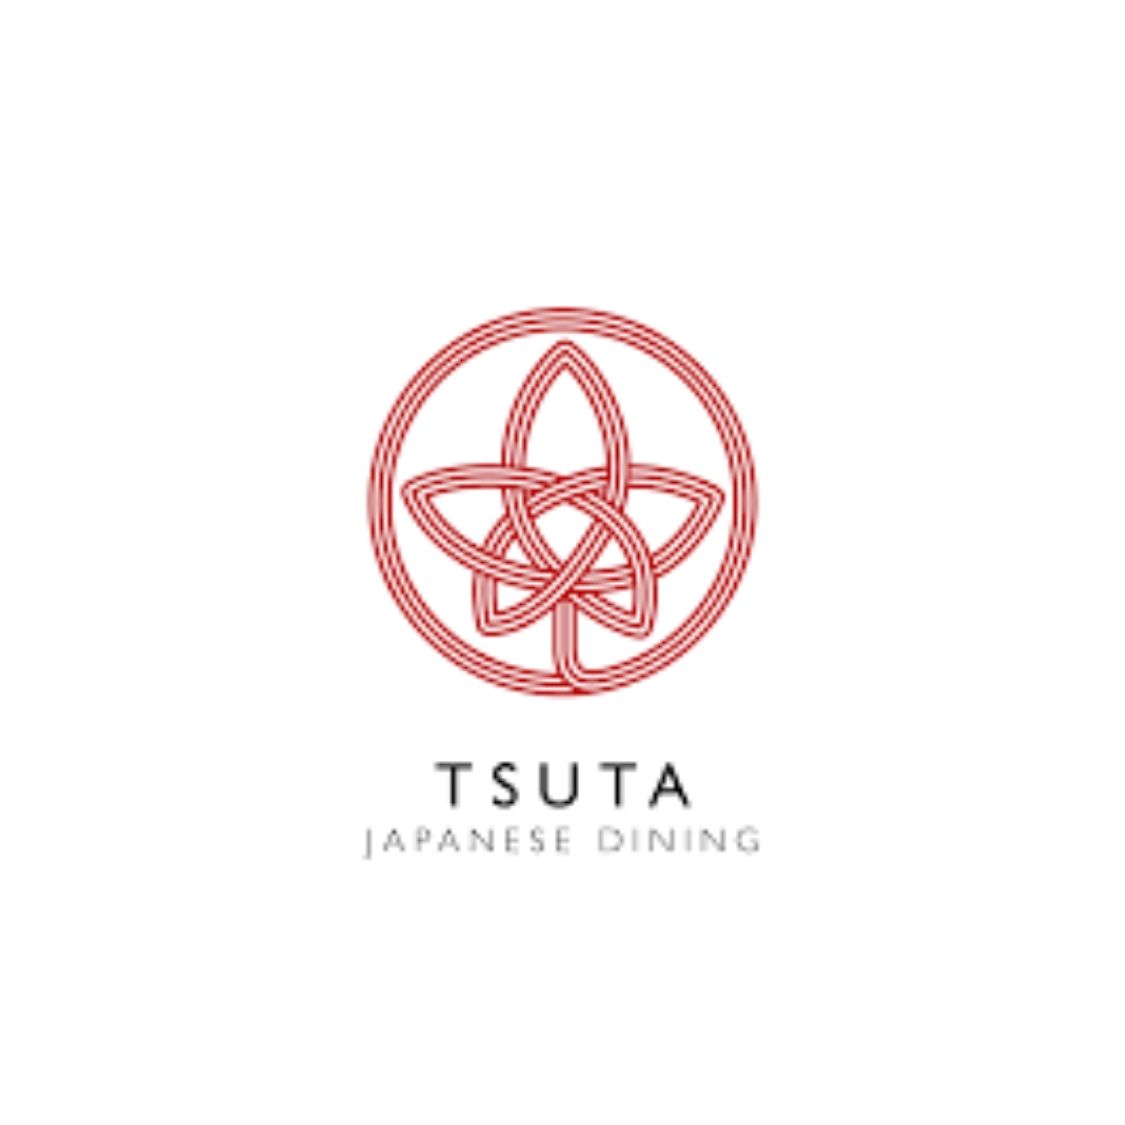 Tsuta Logo.jpg